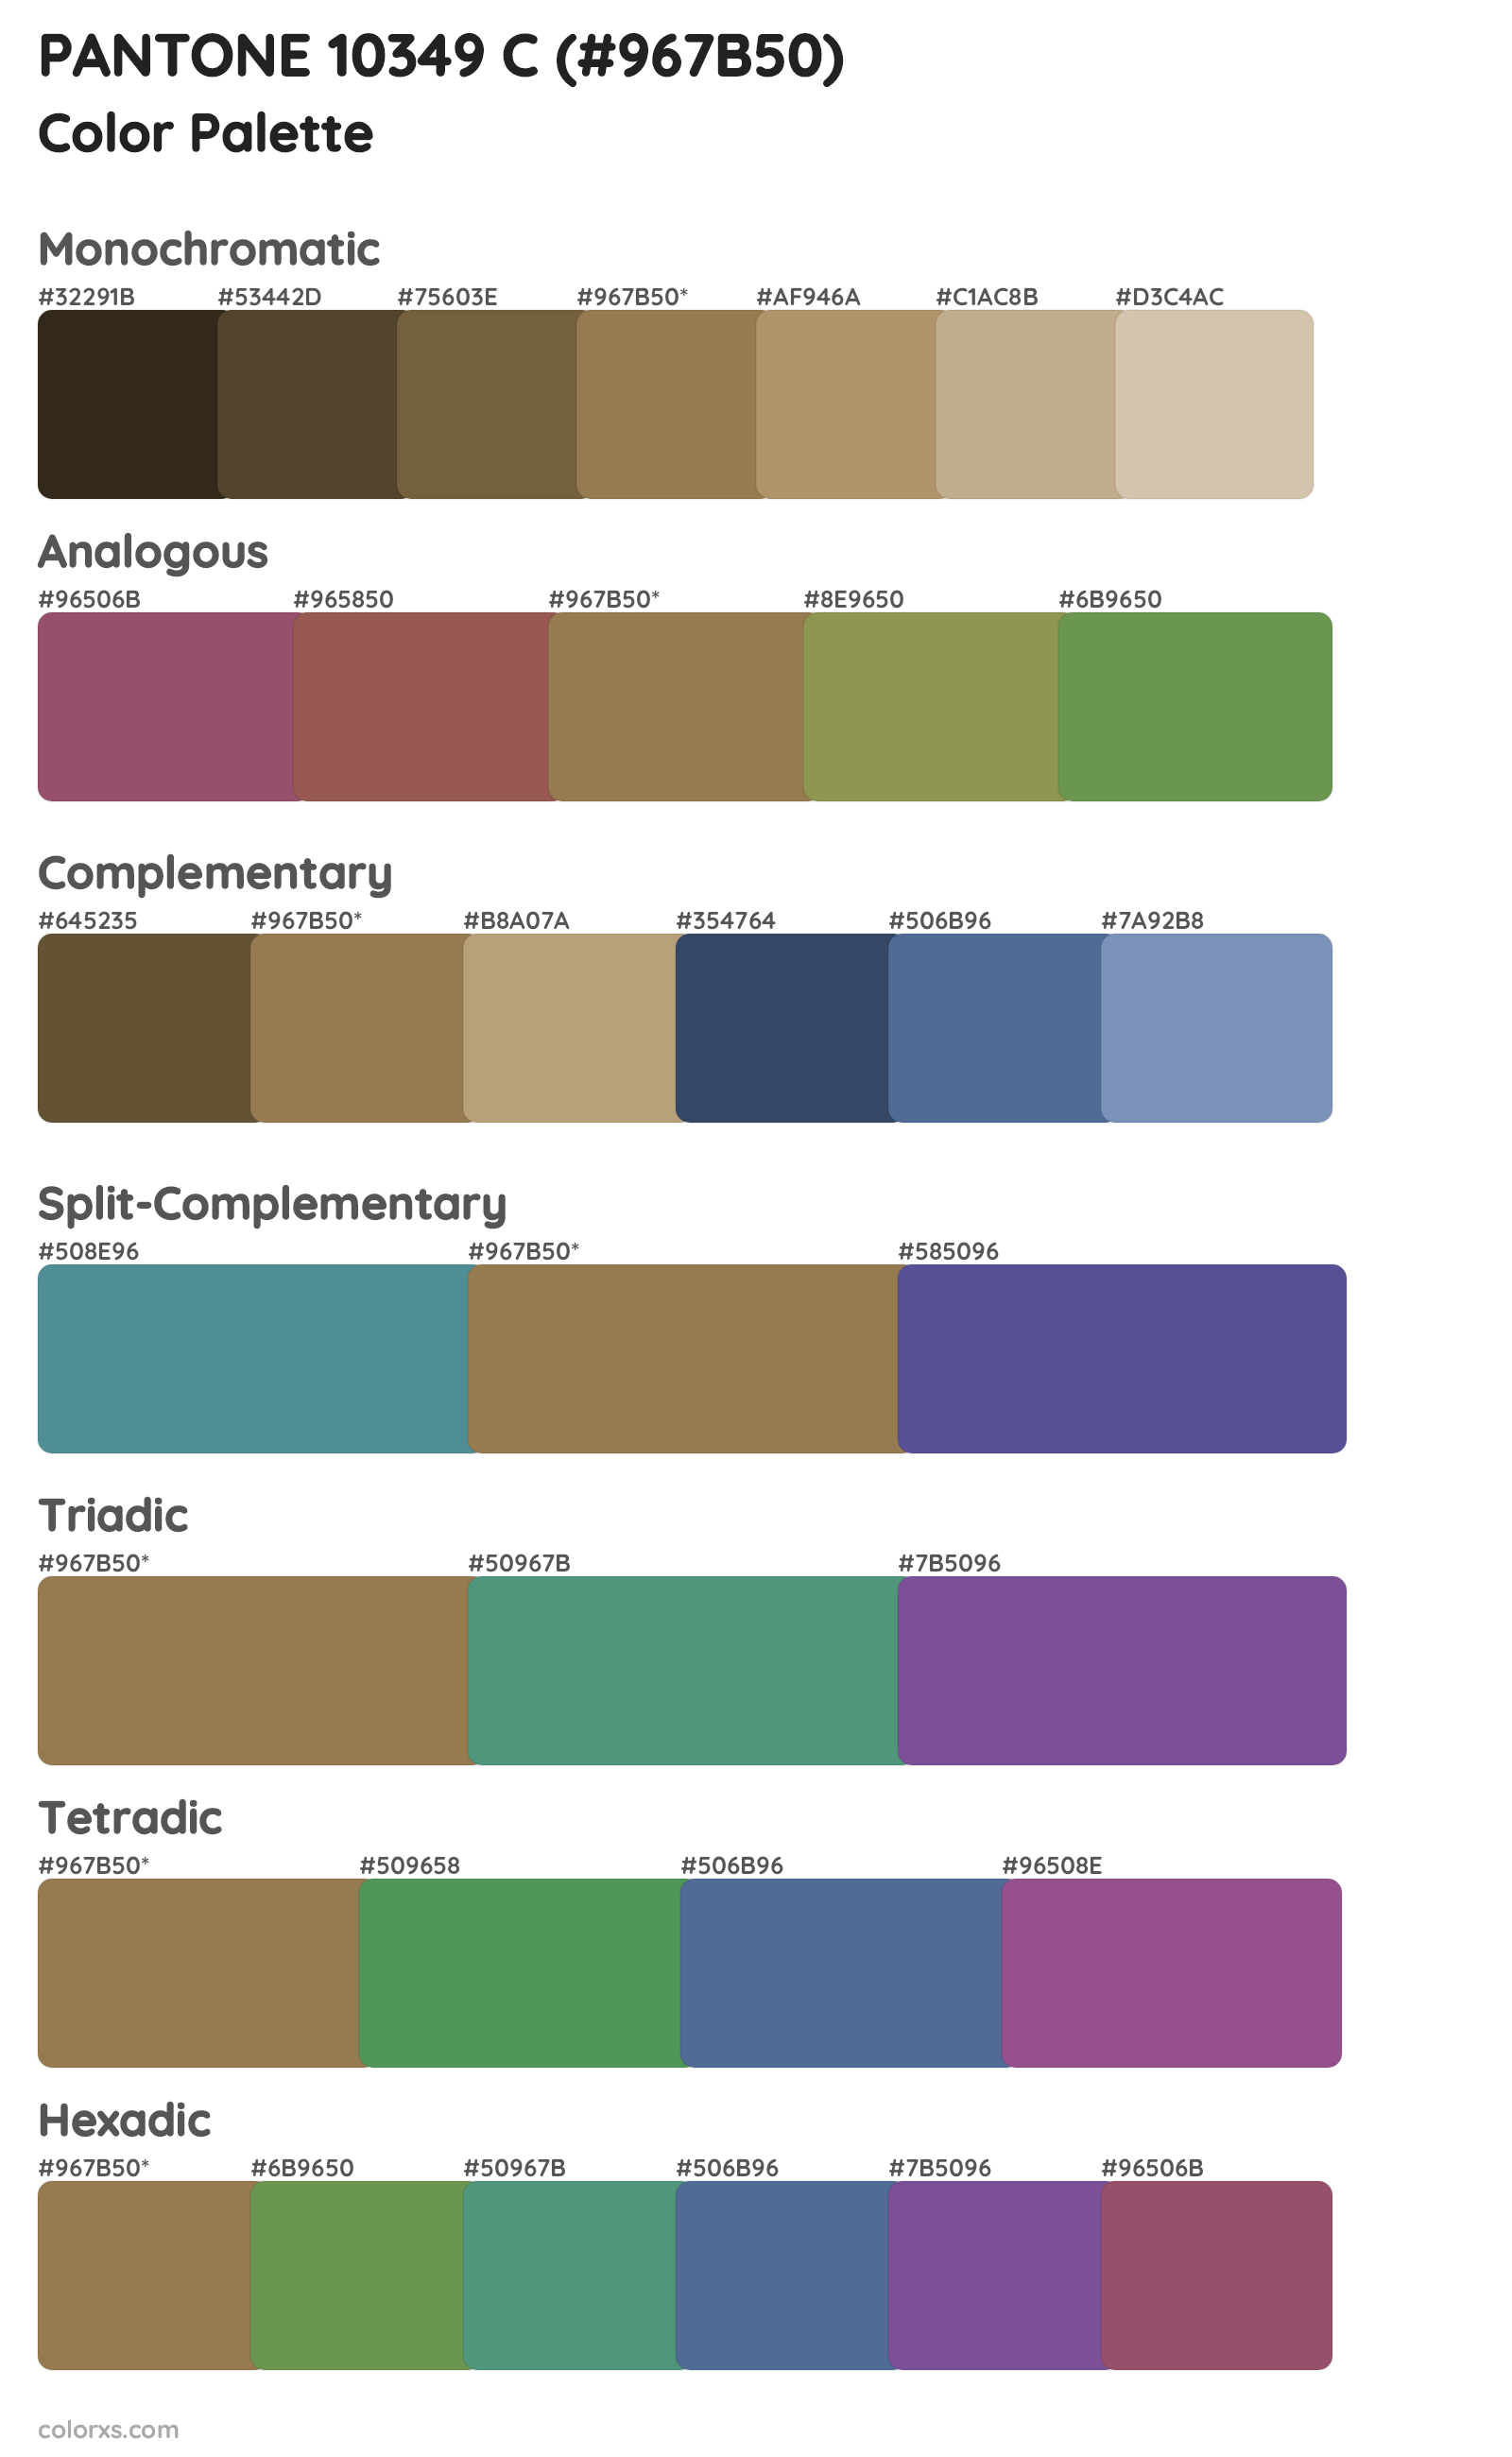 PANTONE 10349 C Color Scheme Palettes